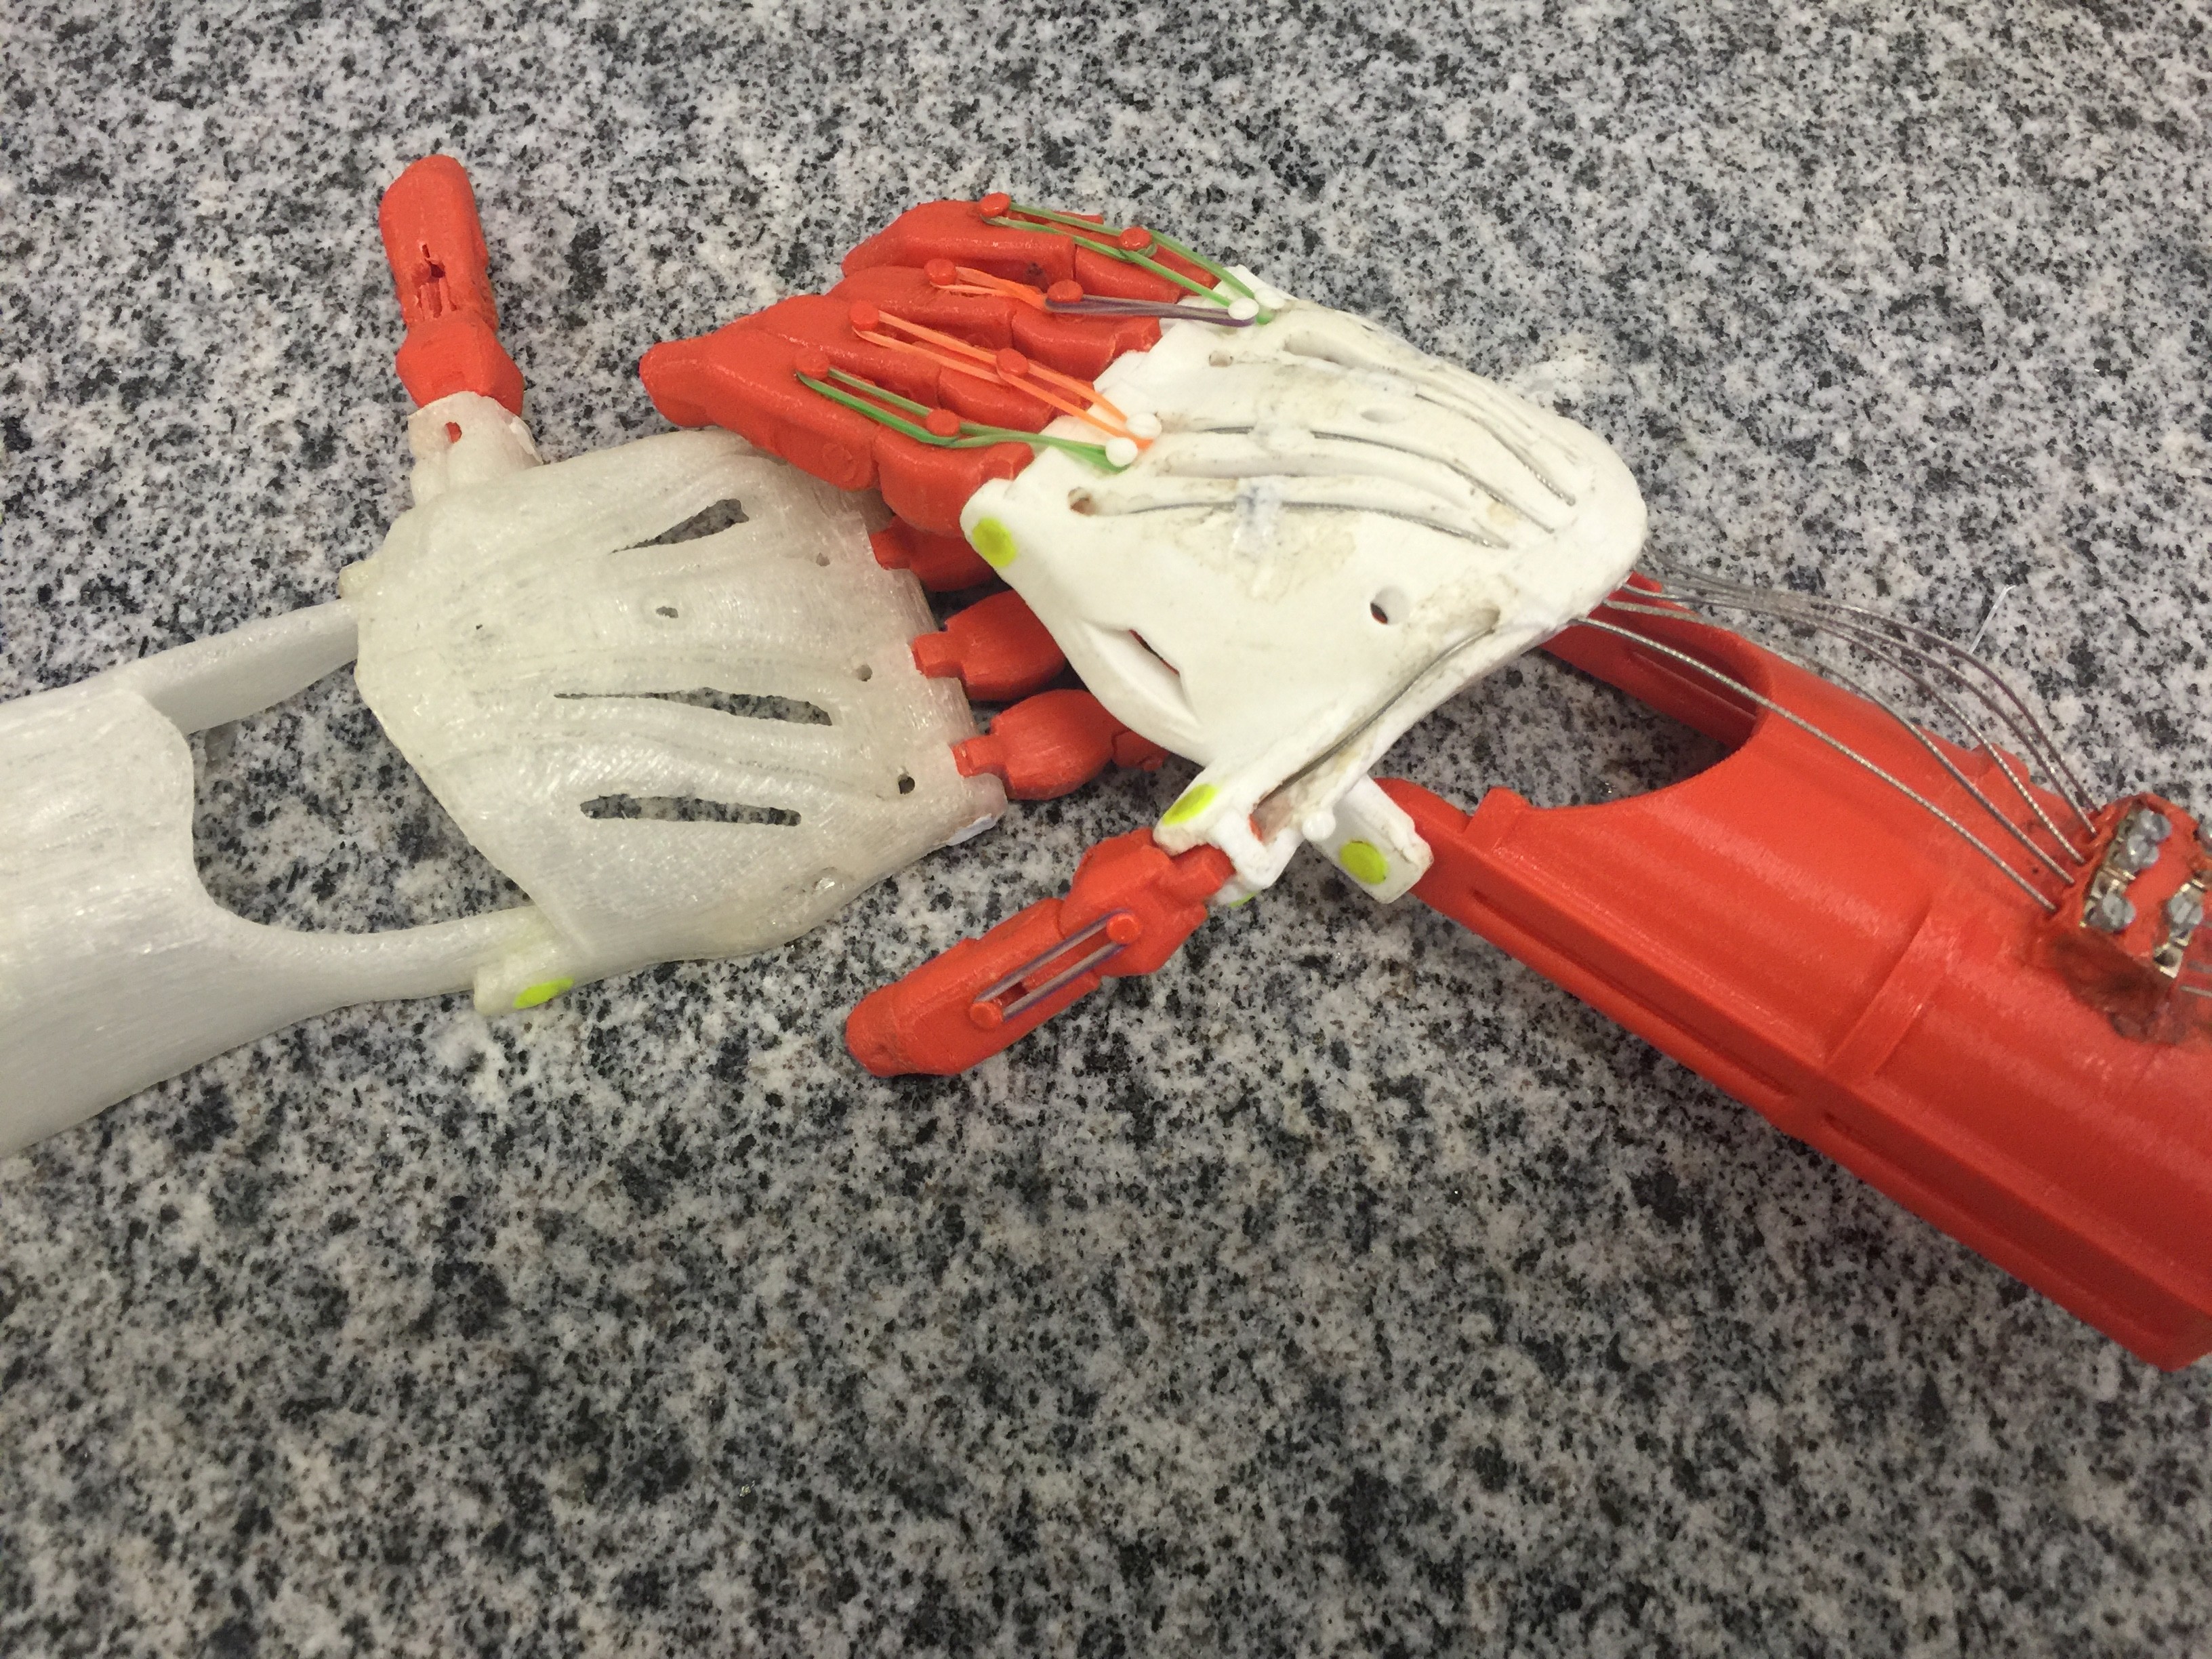 Próteses de braços impressas em 3D na Universidade Federal de Goiás (Foto: Divulgação)